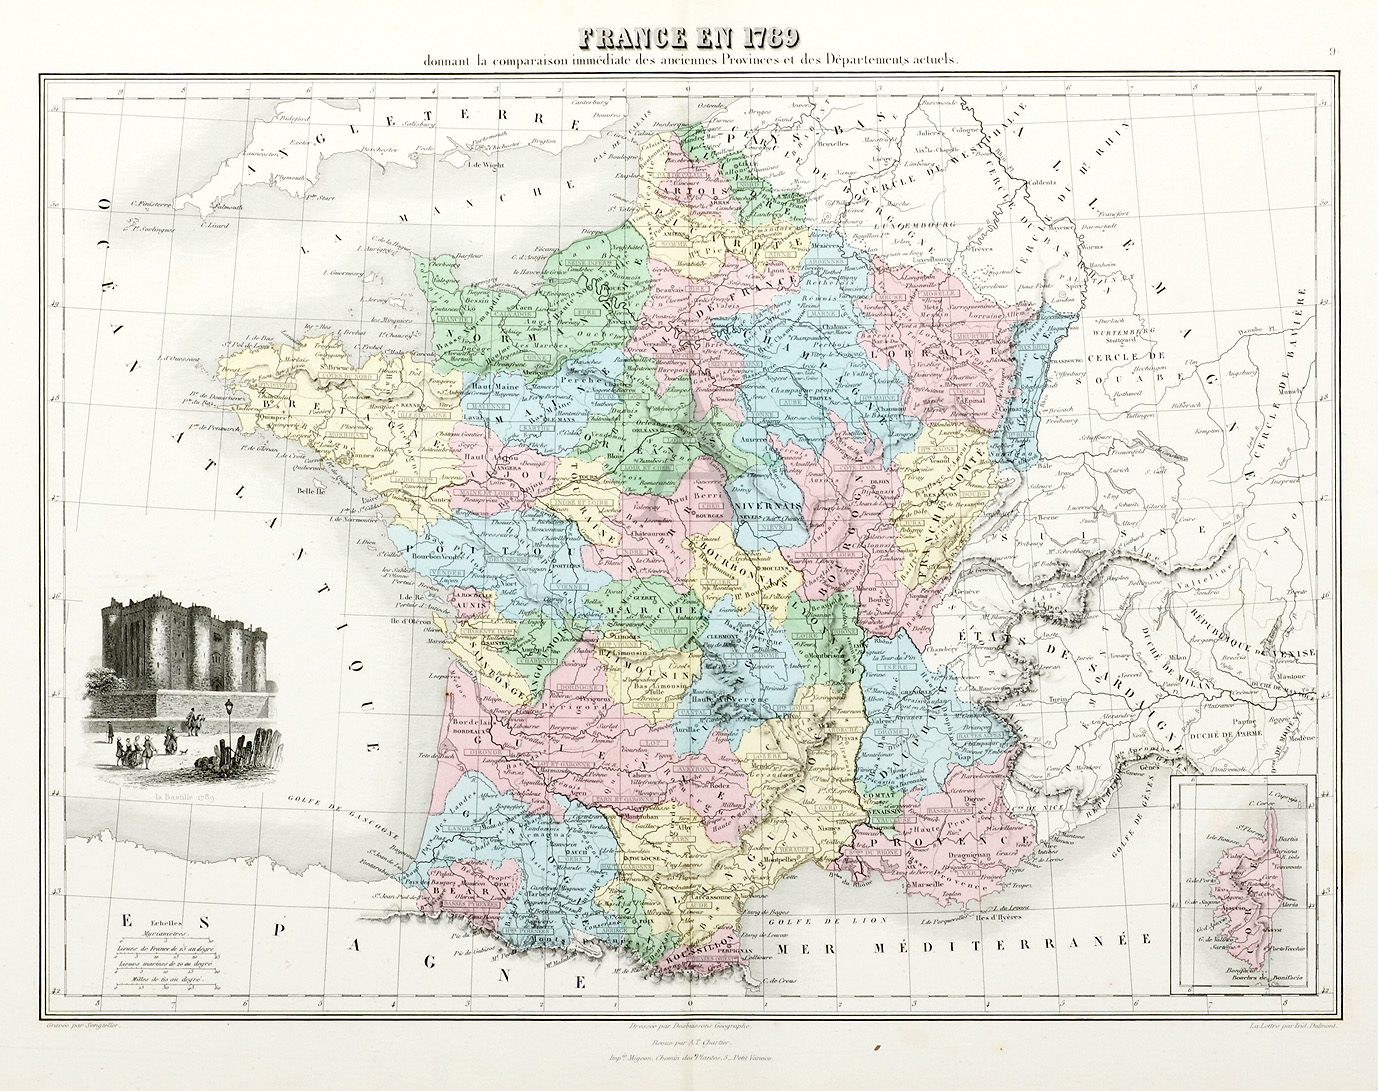 France en 1789 Donnant la Comparaison immediate des Anciennes Provinces et des Departements Actuels - Antique Print from 1882